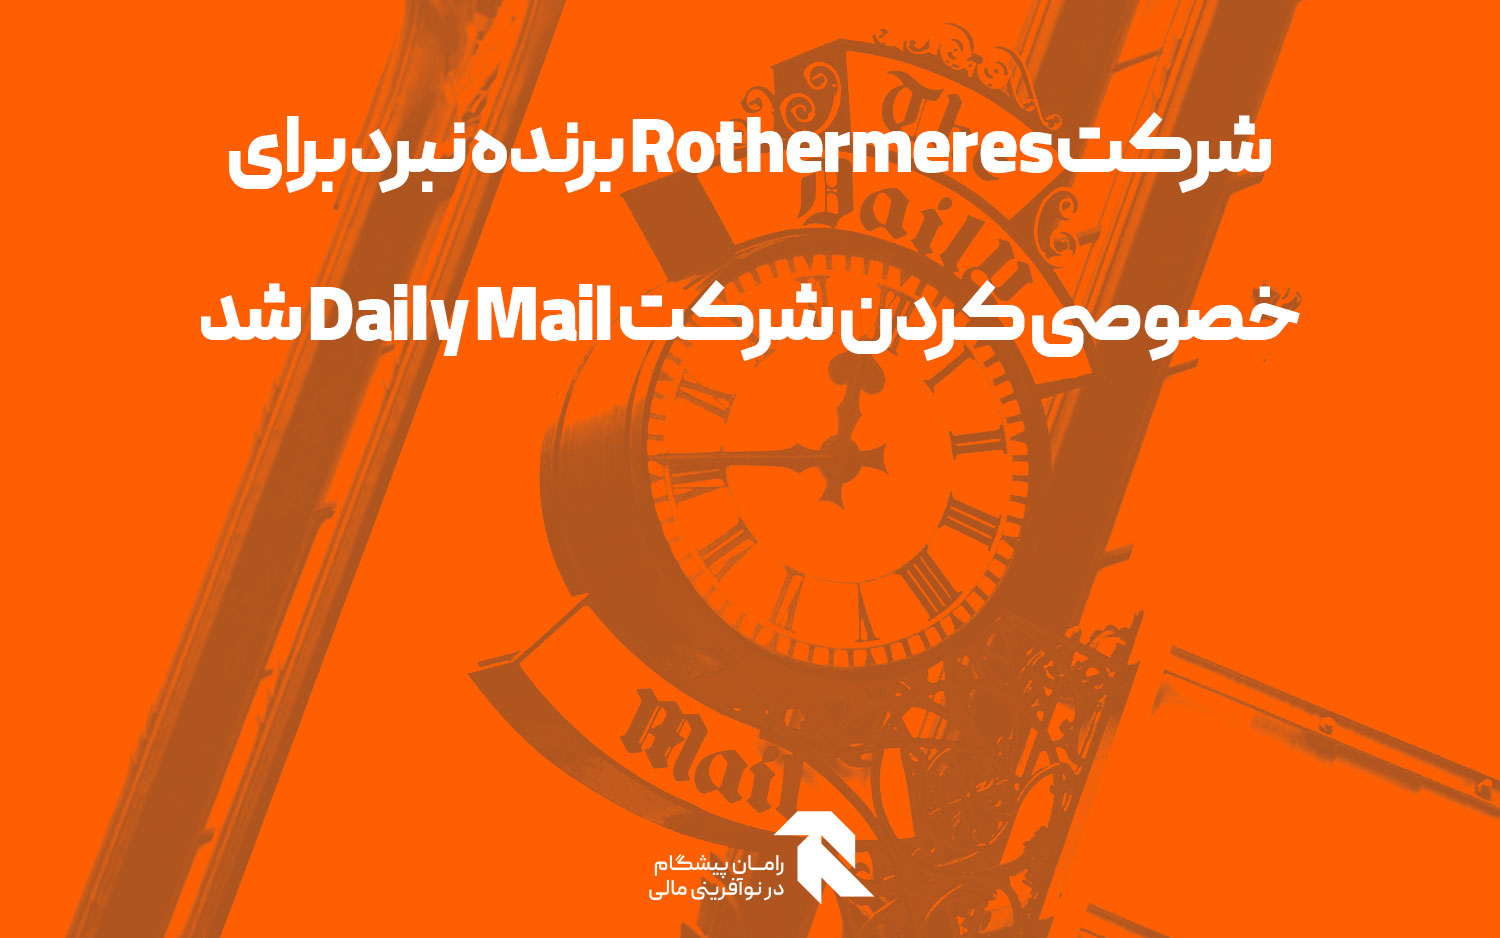 شرکت Rothermeres برنده نبرد برای خصوصی کردن شرکت Daily Mail شد